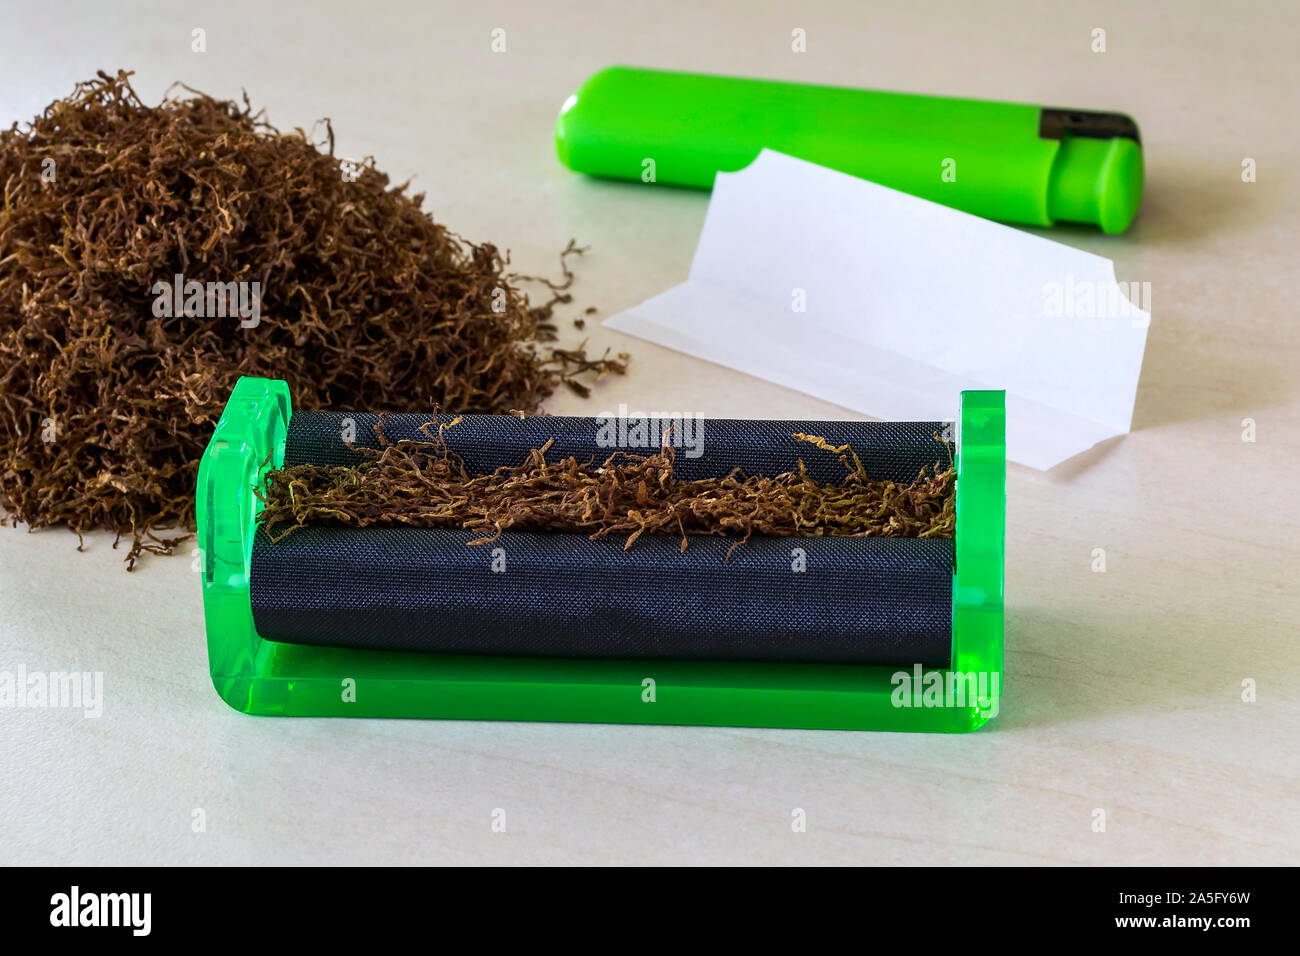 Cigarrillo verde máquina laminadora, papel de cigarrillo, verde ligero y el montón de tabaco en una tabla en blanco. Hacer los cigarrillos con tabaco de pipa en casa. Foto de stock